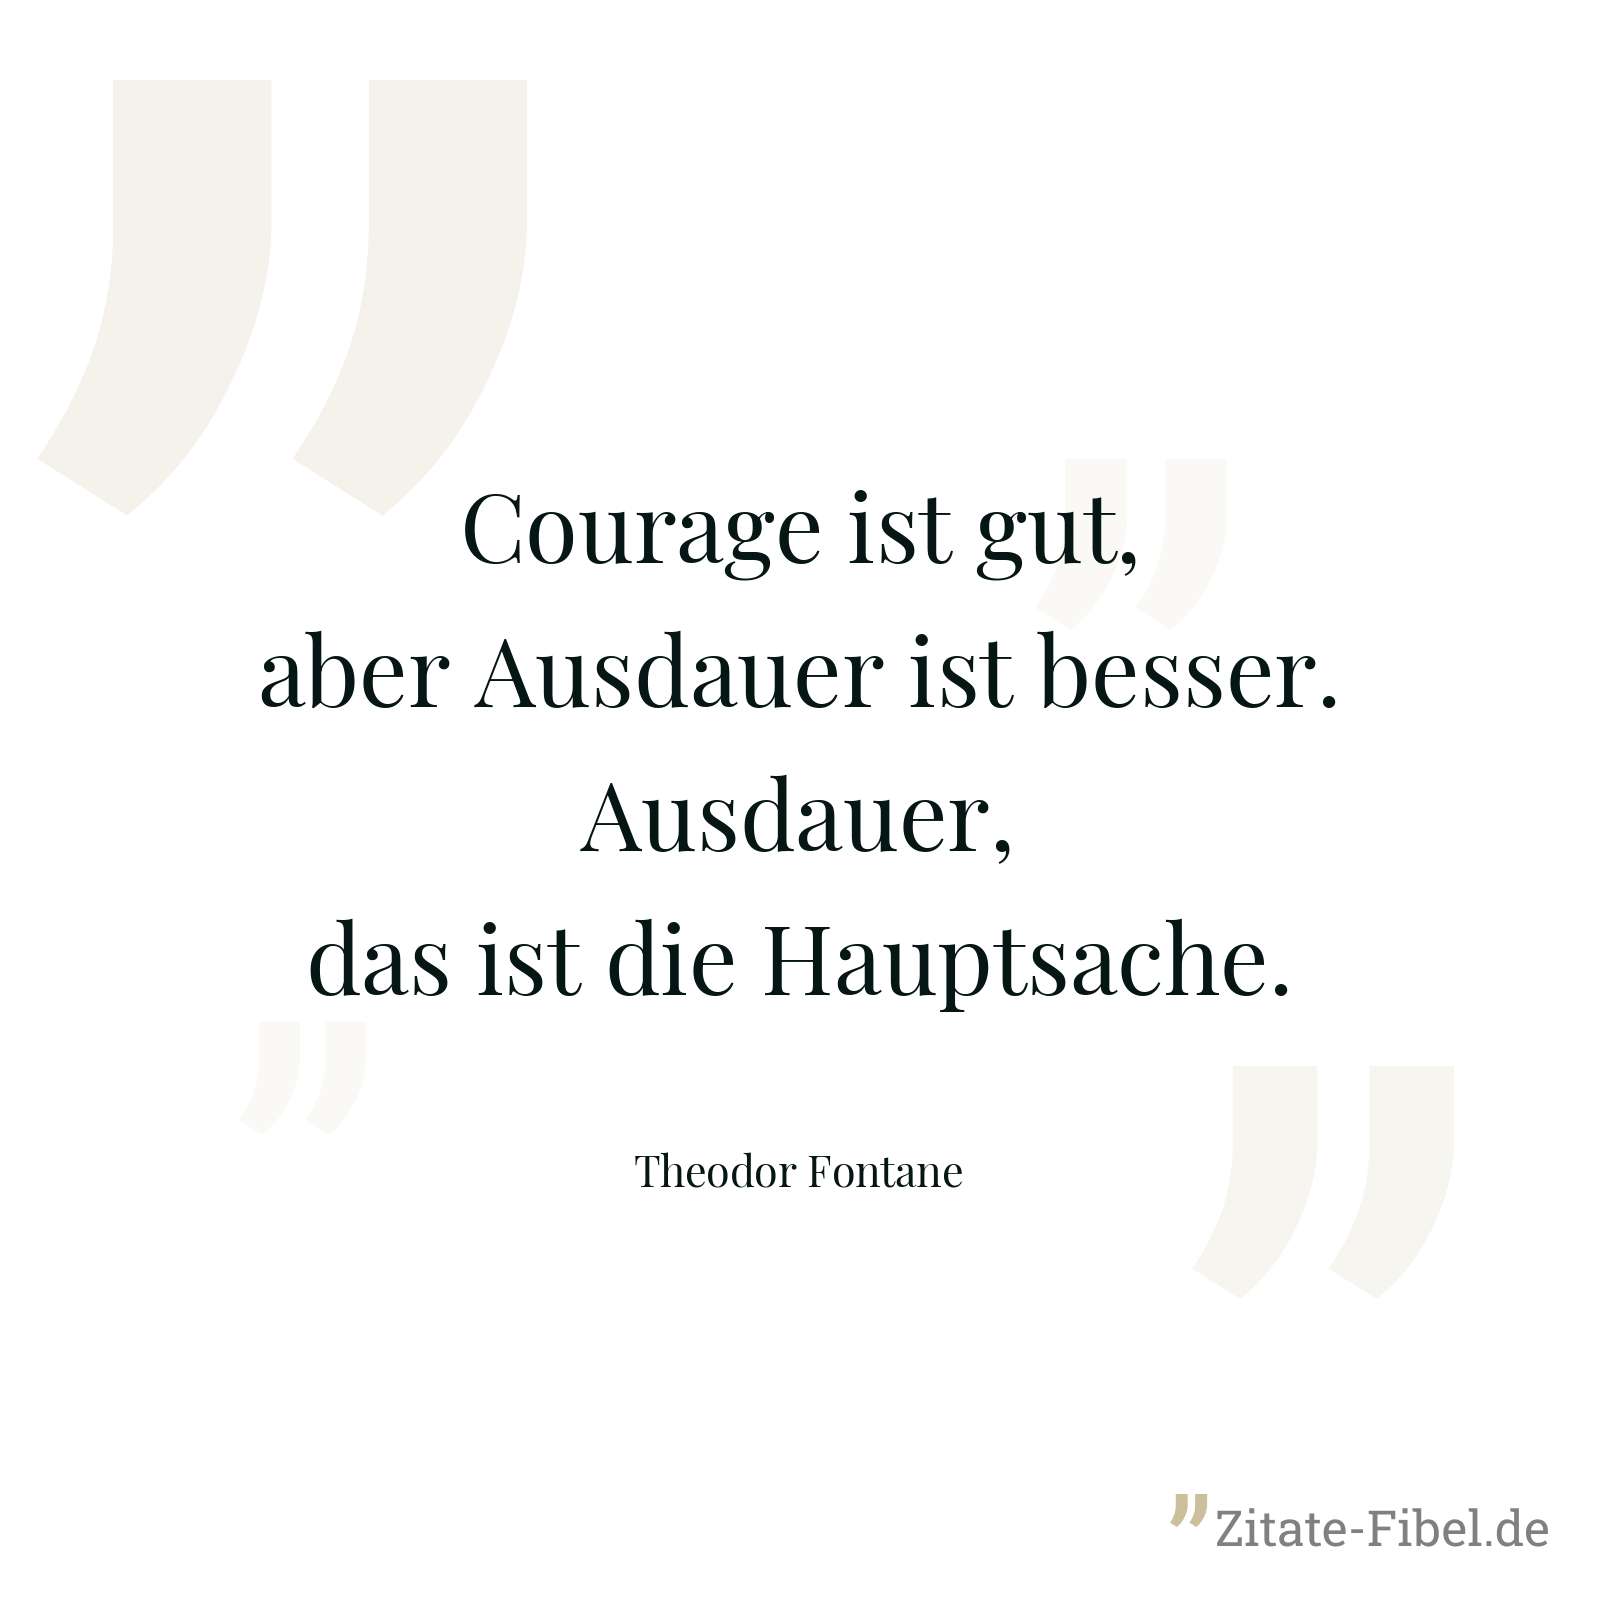 Courage ist gut, aber Ausdauer ist besser. Ausdauer, das ist die Hauptsache. - Theodor Fontane